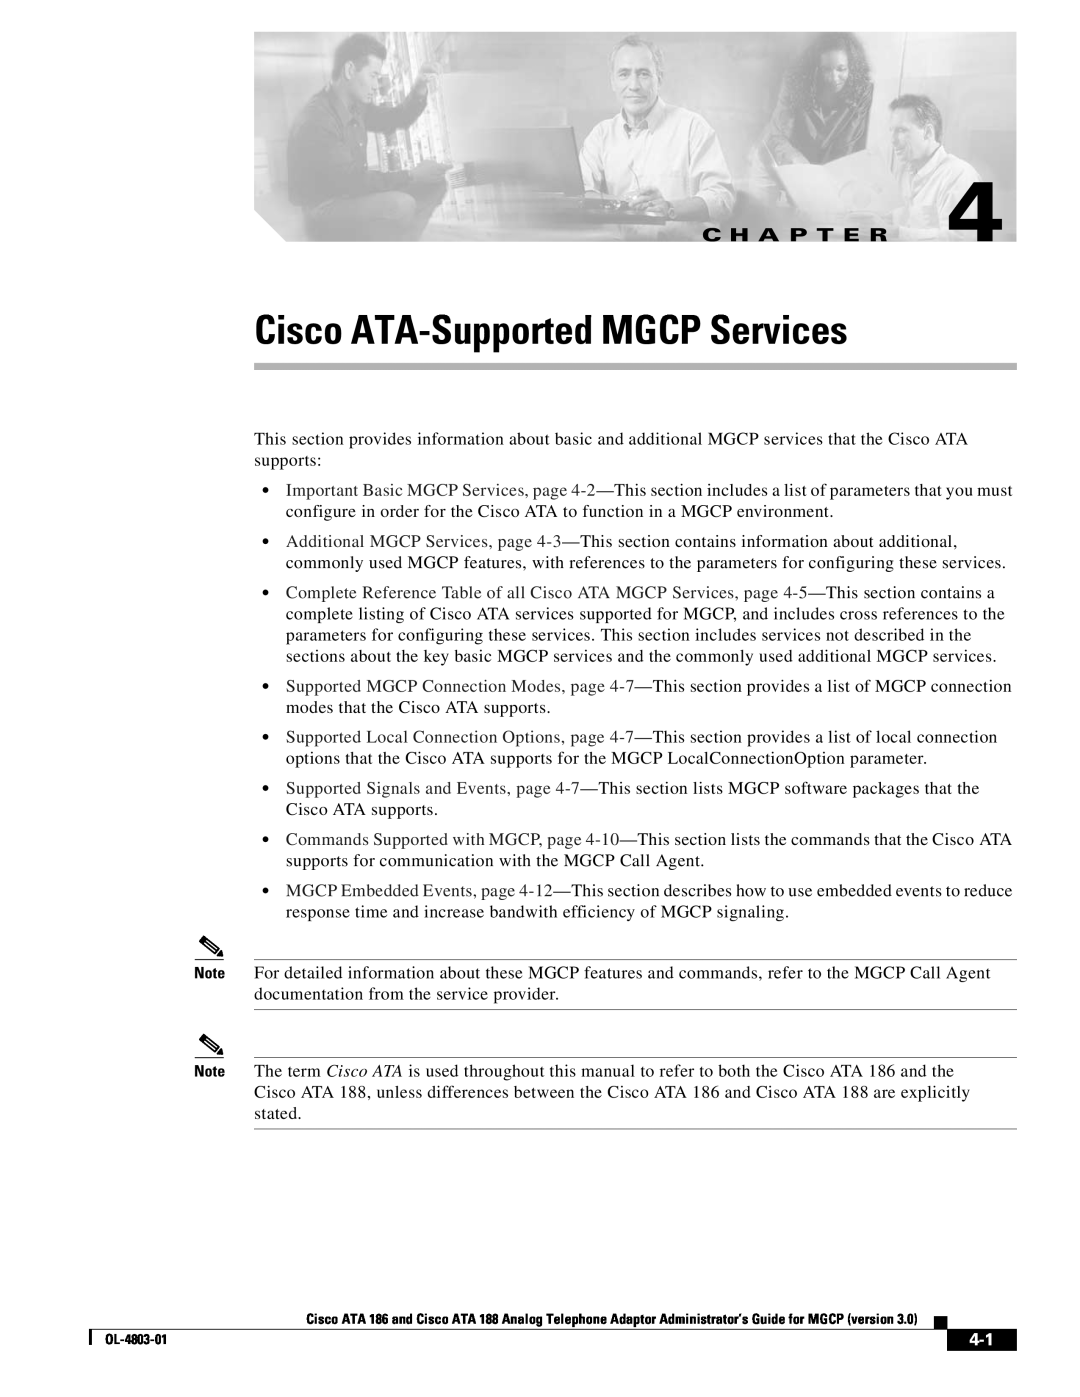 Cisco Systems ATA 188, ATA 186 manual Cisco ATA-Supported MGCP Services, C H A P T E R 